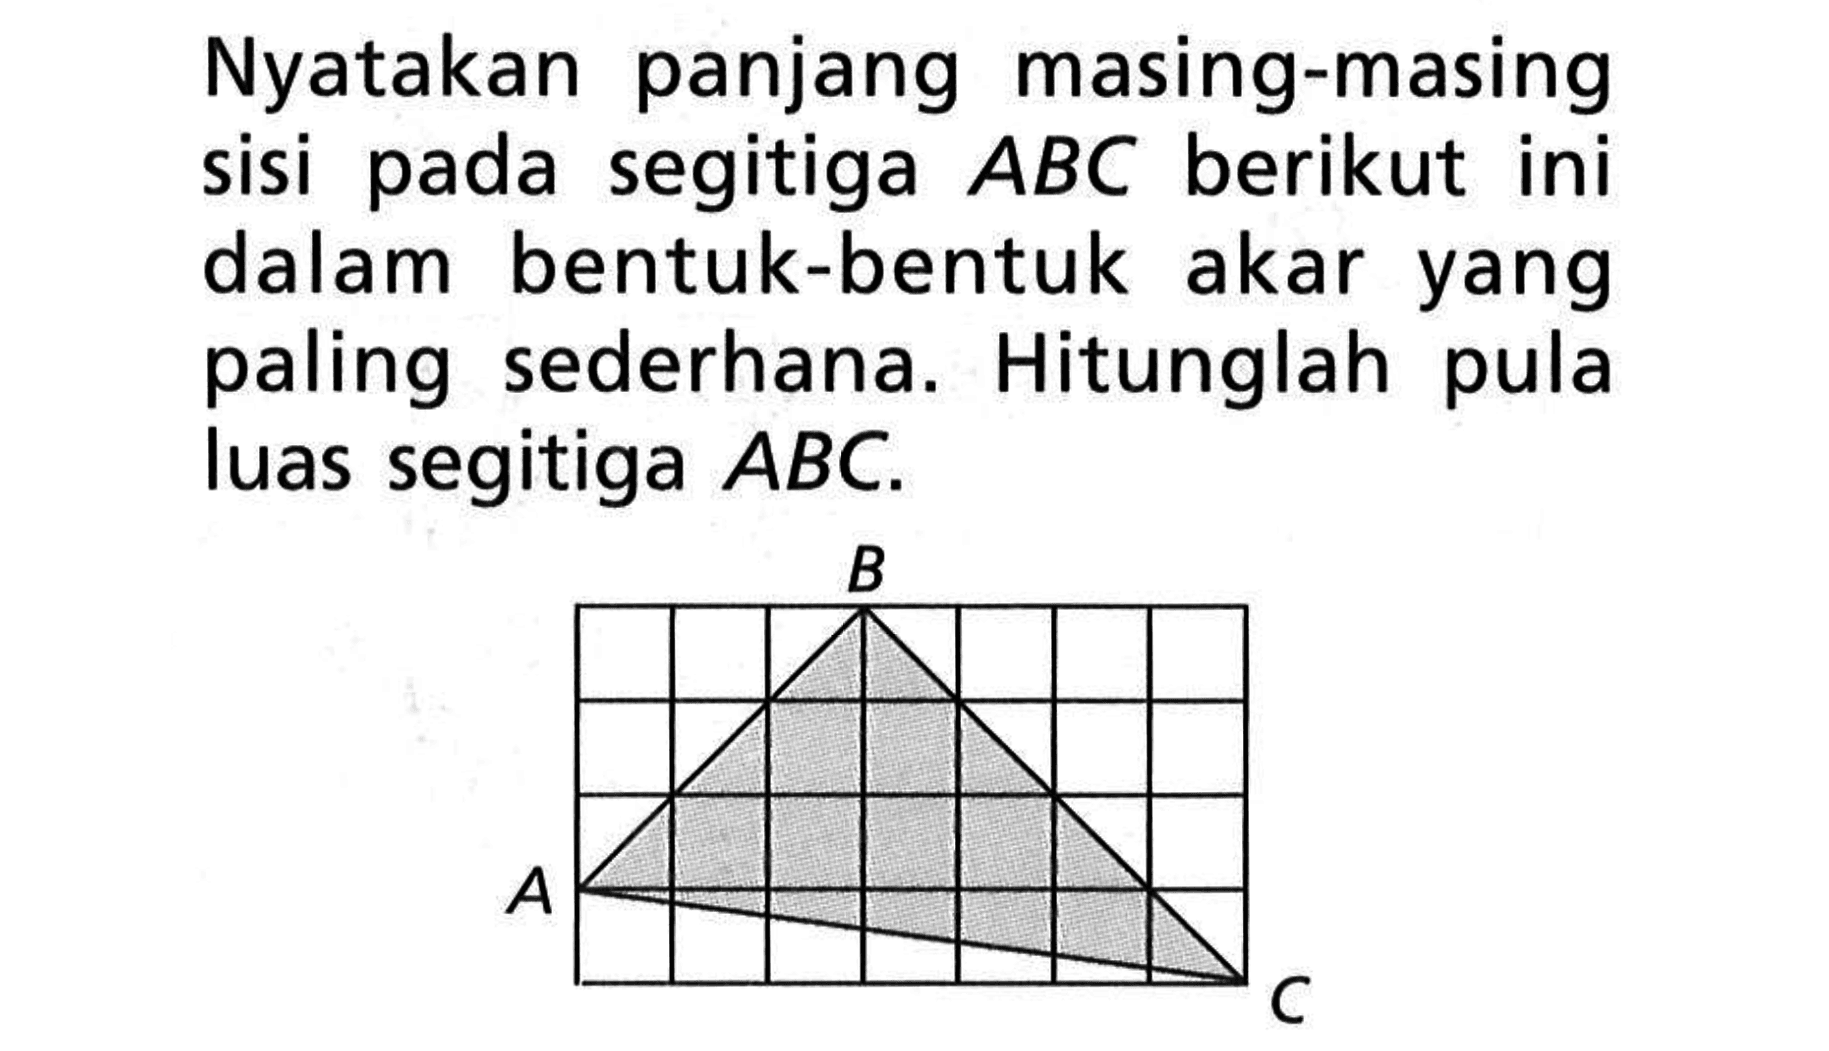 Nyatakan panjang masing-masing sisi pada segitiga  ABC  berikut ini dalam bentuk-bentuk akar yang paling sederhana. Hitunglah pula luas segitiga  ABC .